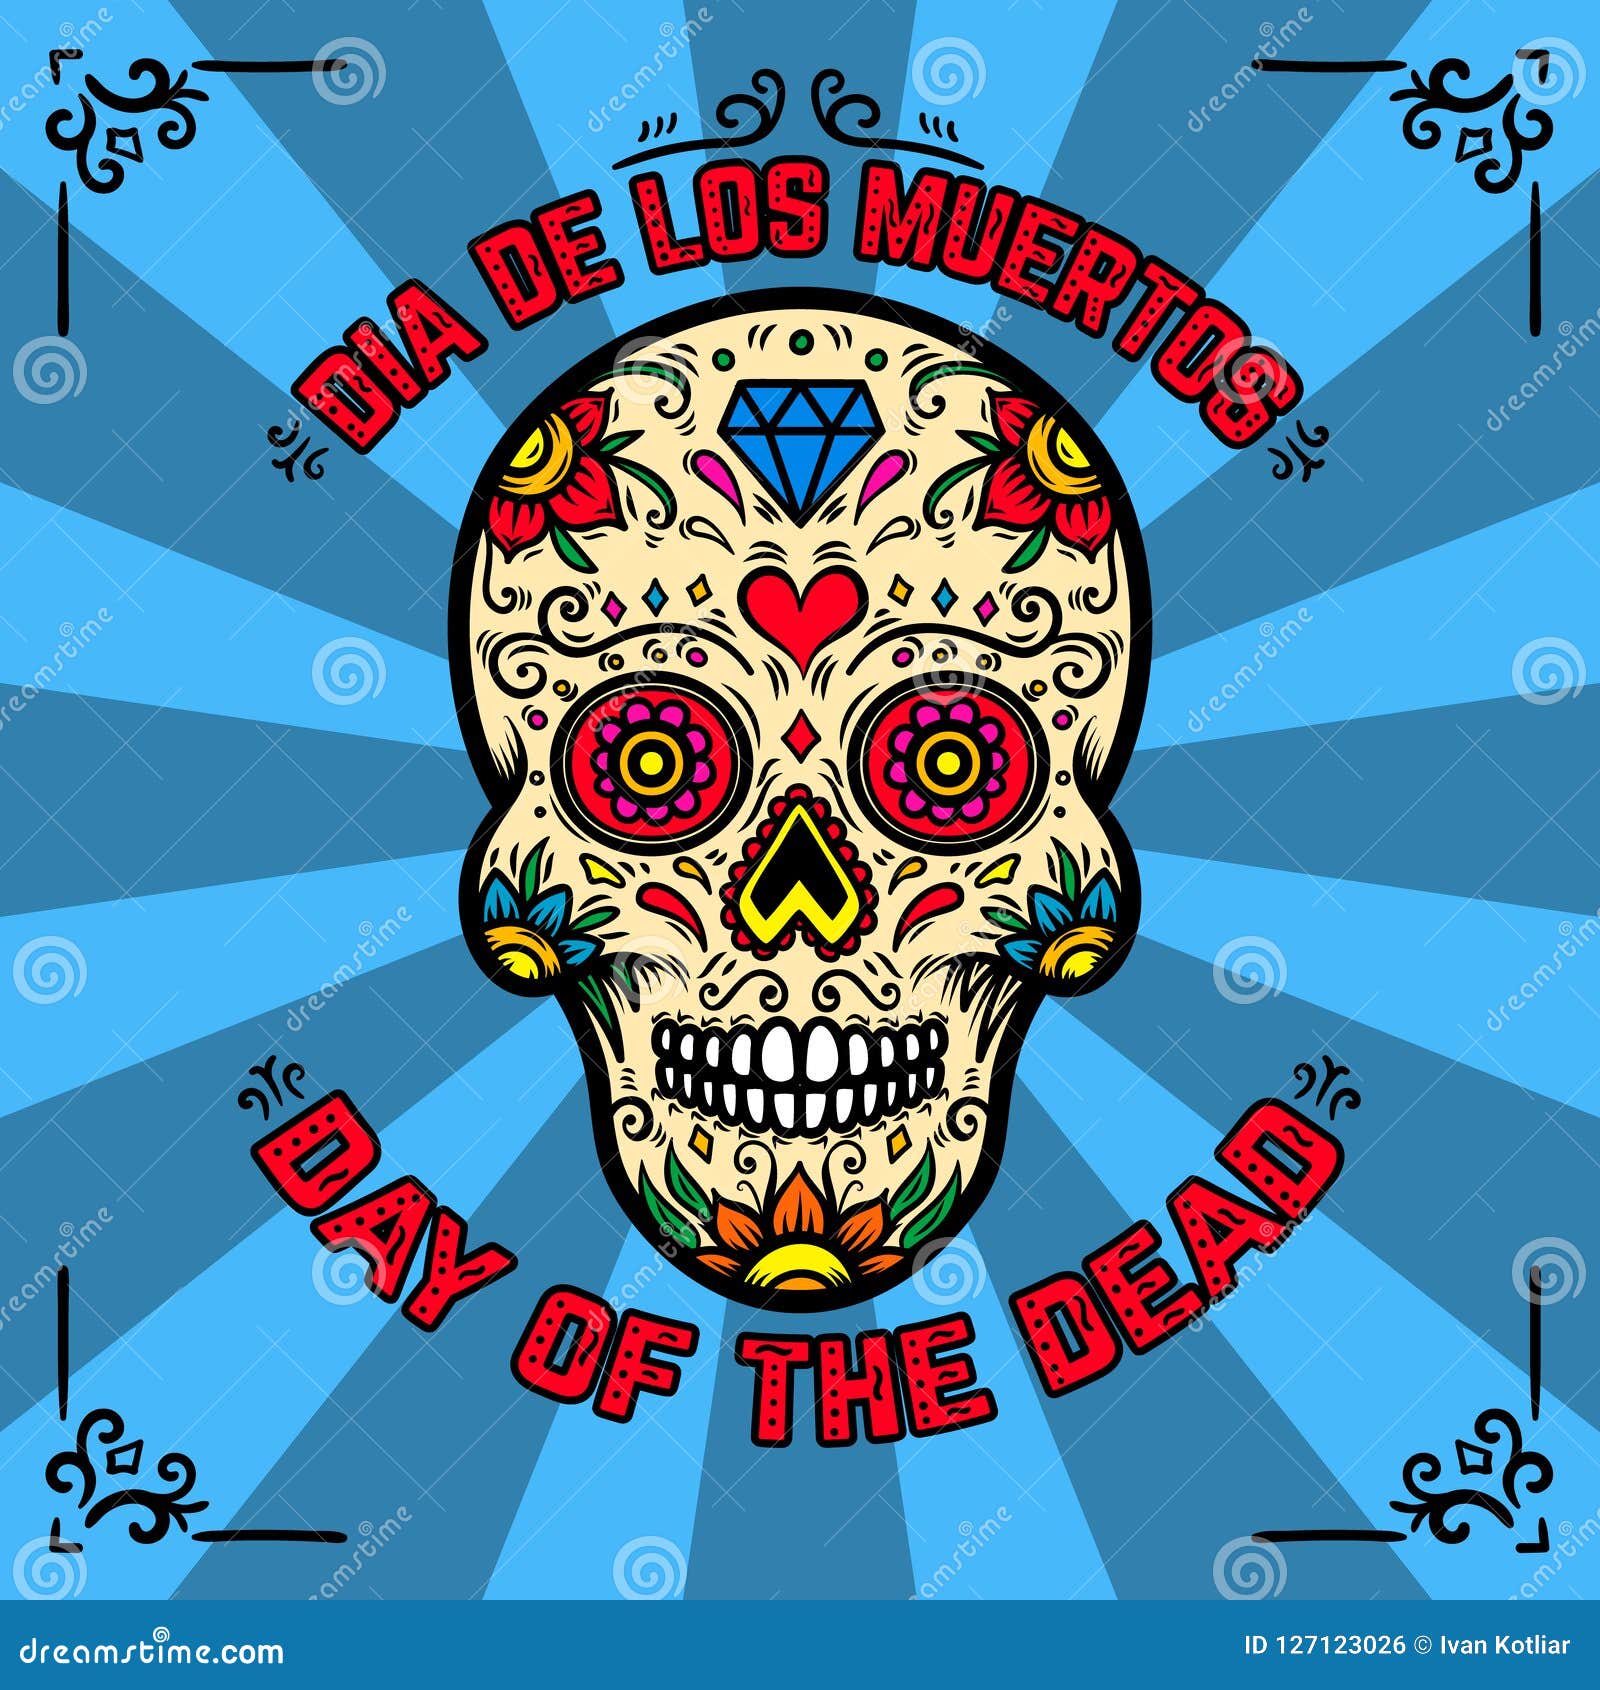 day-of-the-dead-dia-de-los-muertos-banner-template-with-mexican-sugar